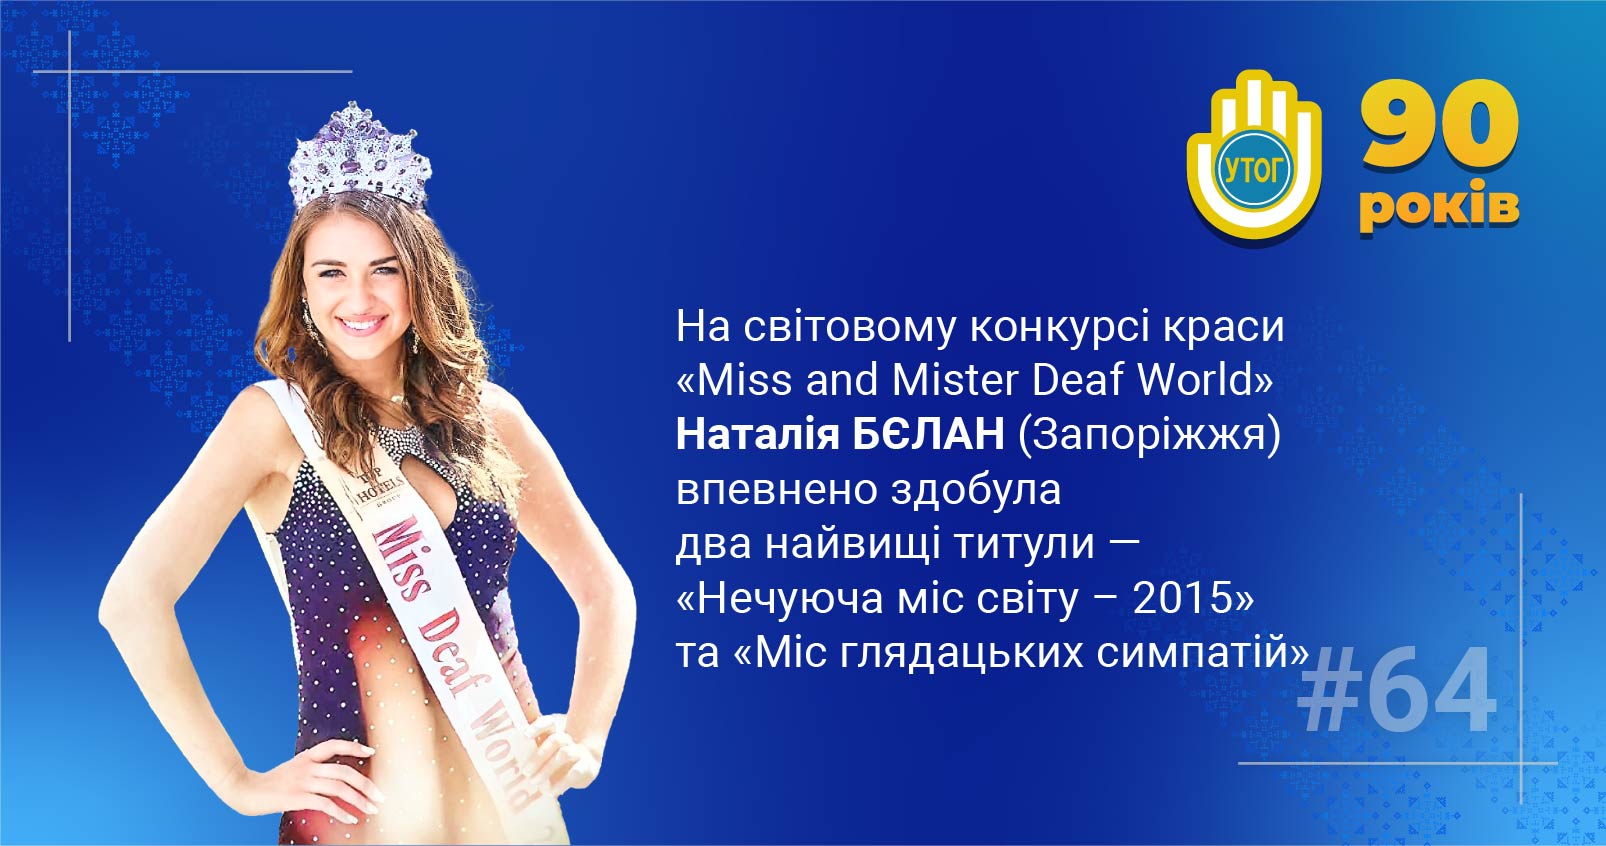 64. На світовому конкурсі краси «Miss and Mister Deaf World» Наталія Бєлан впевнено здобула два найвищі титули — «Нечуюча міс світу - 2015» та «Міс глядацьких симпатій»